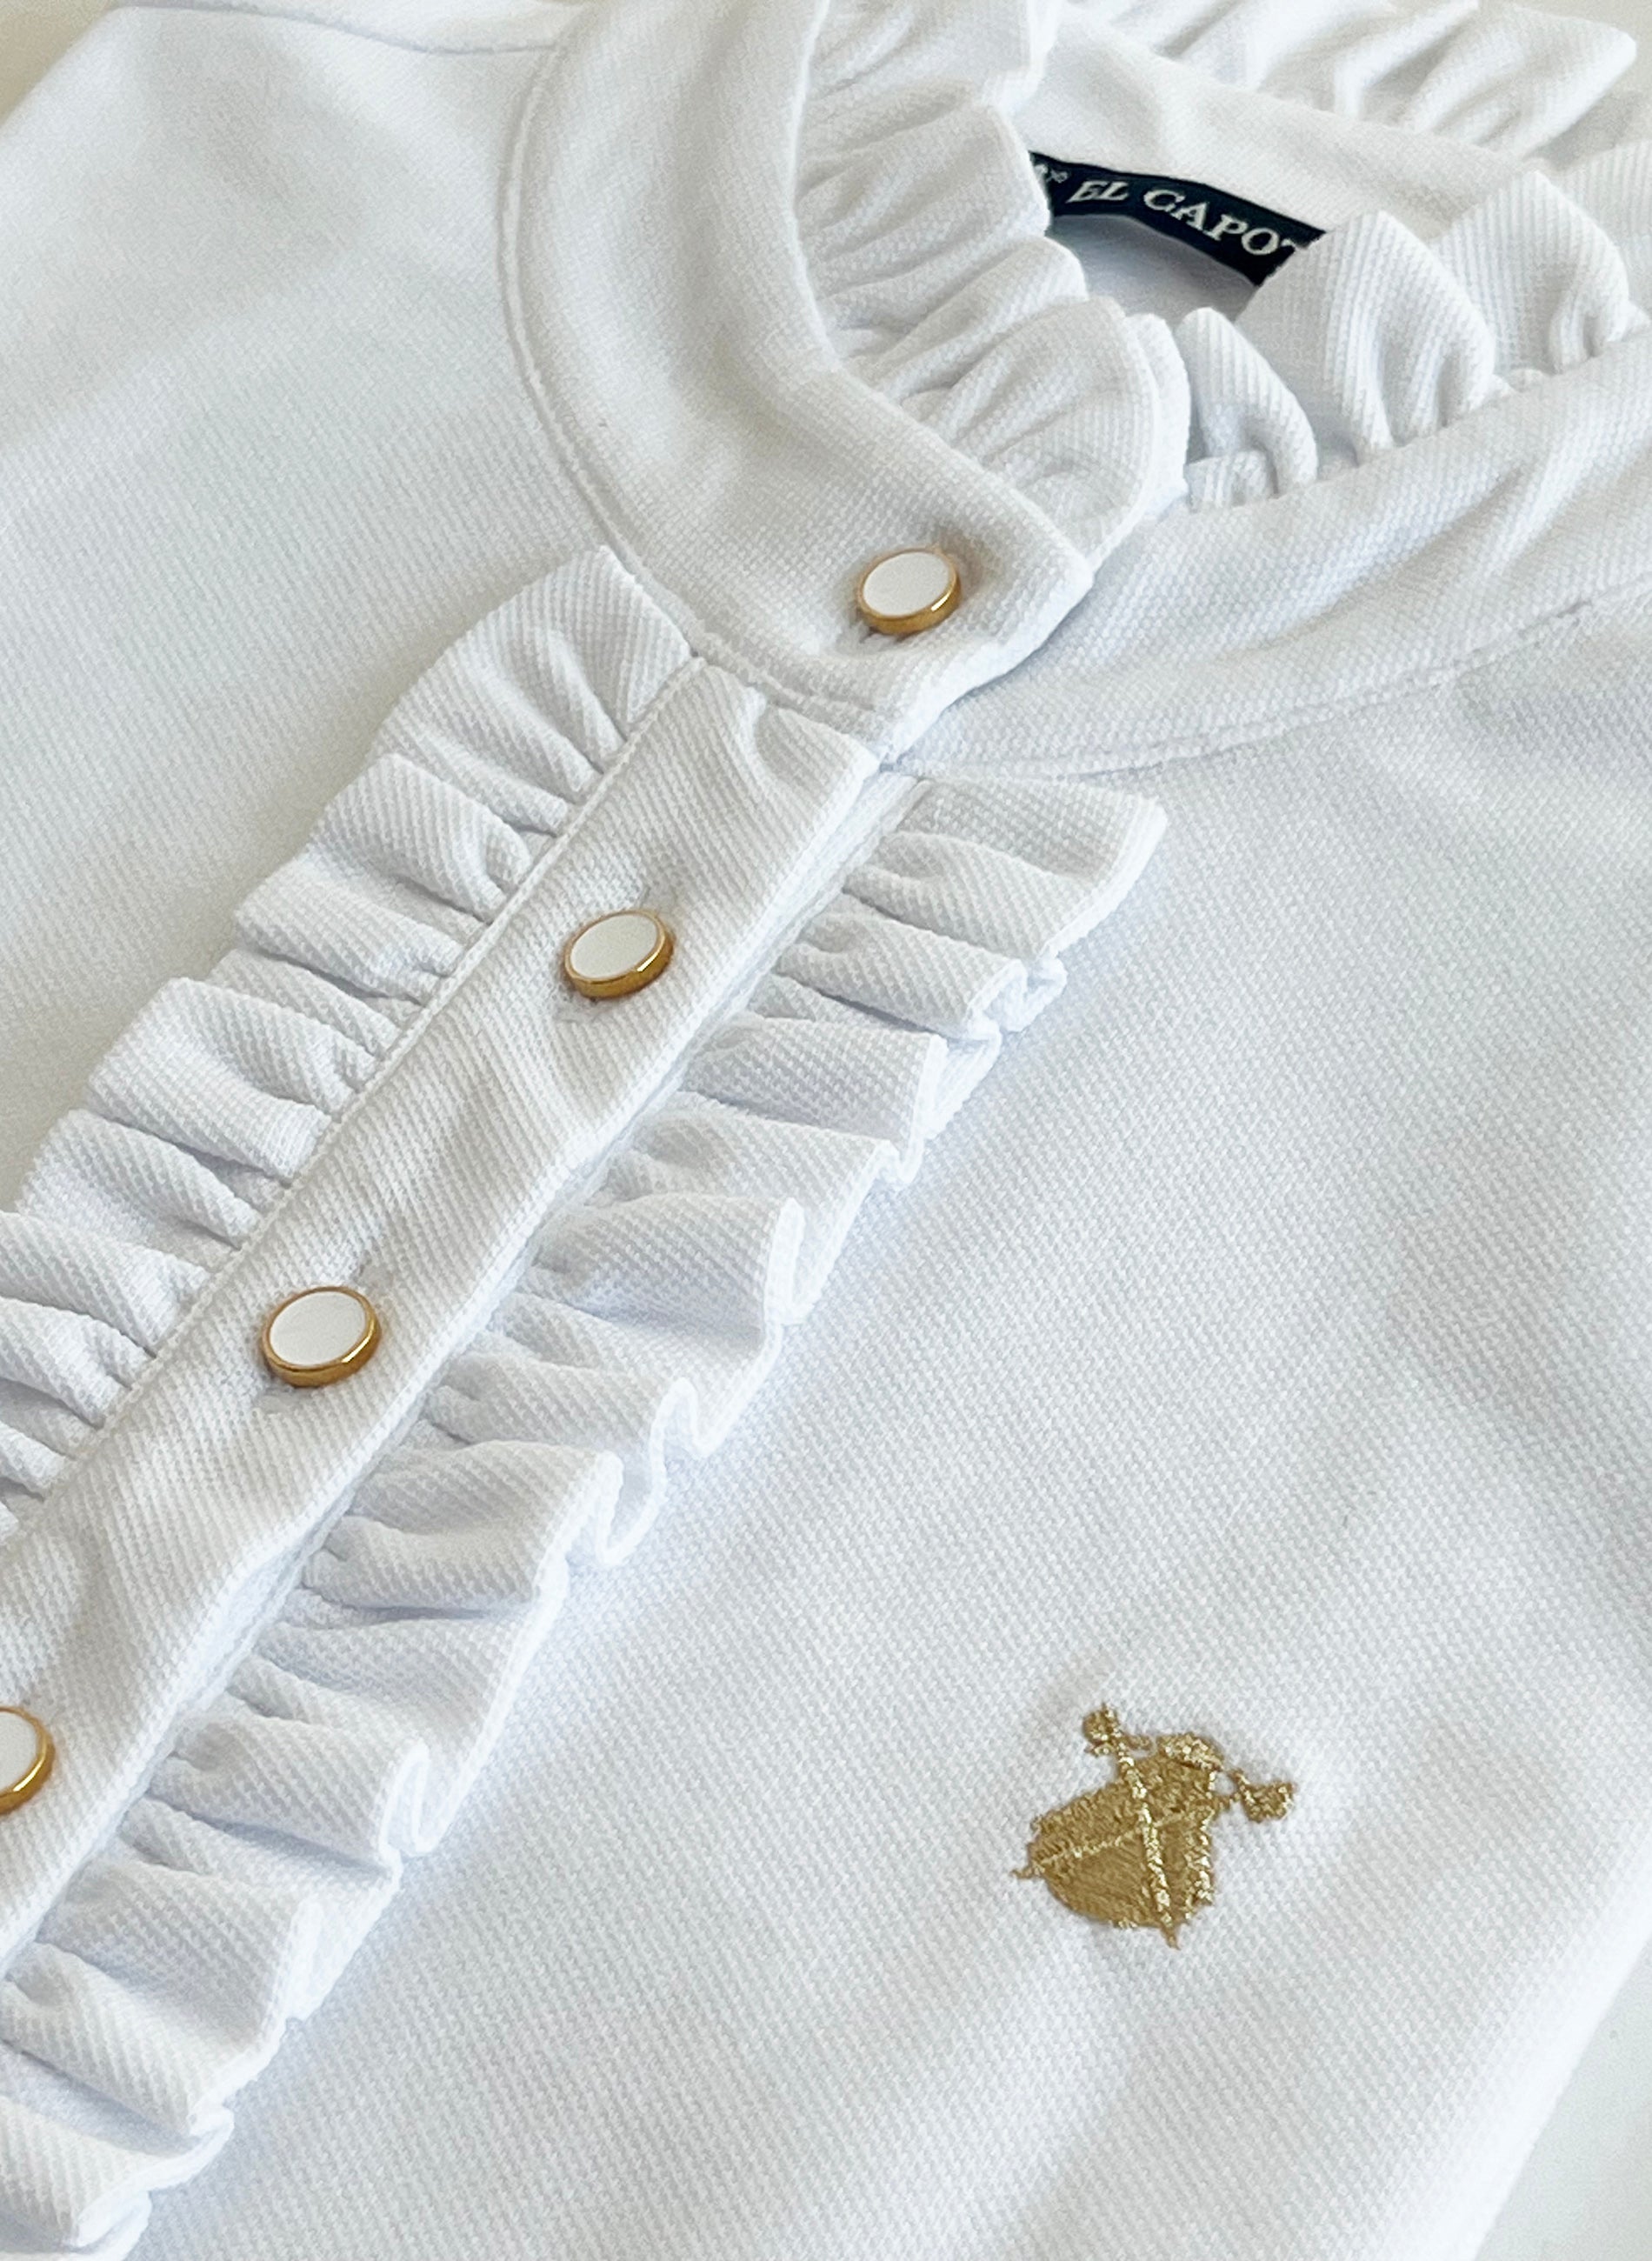 Women's White Polo Shirt with Ruffles